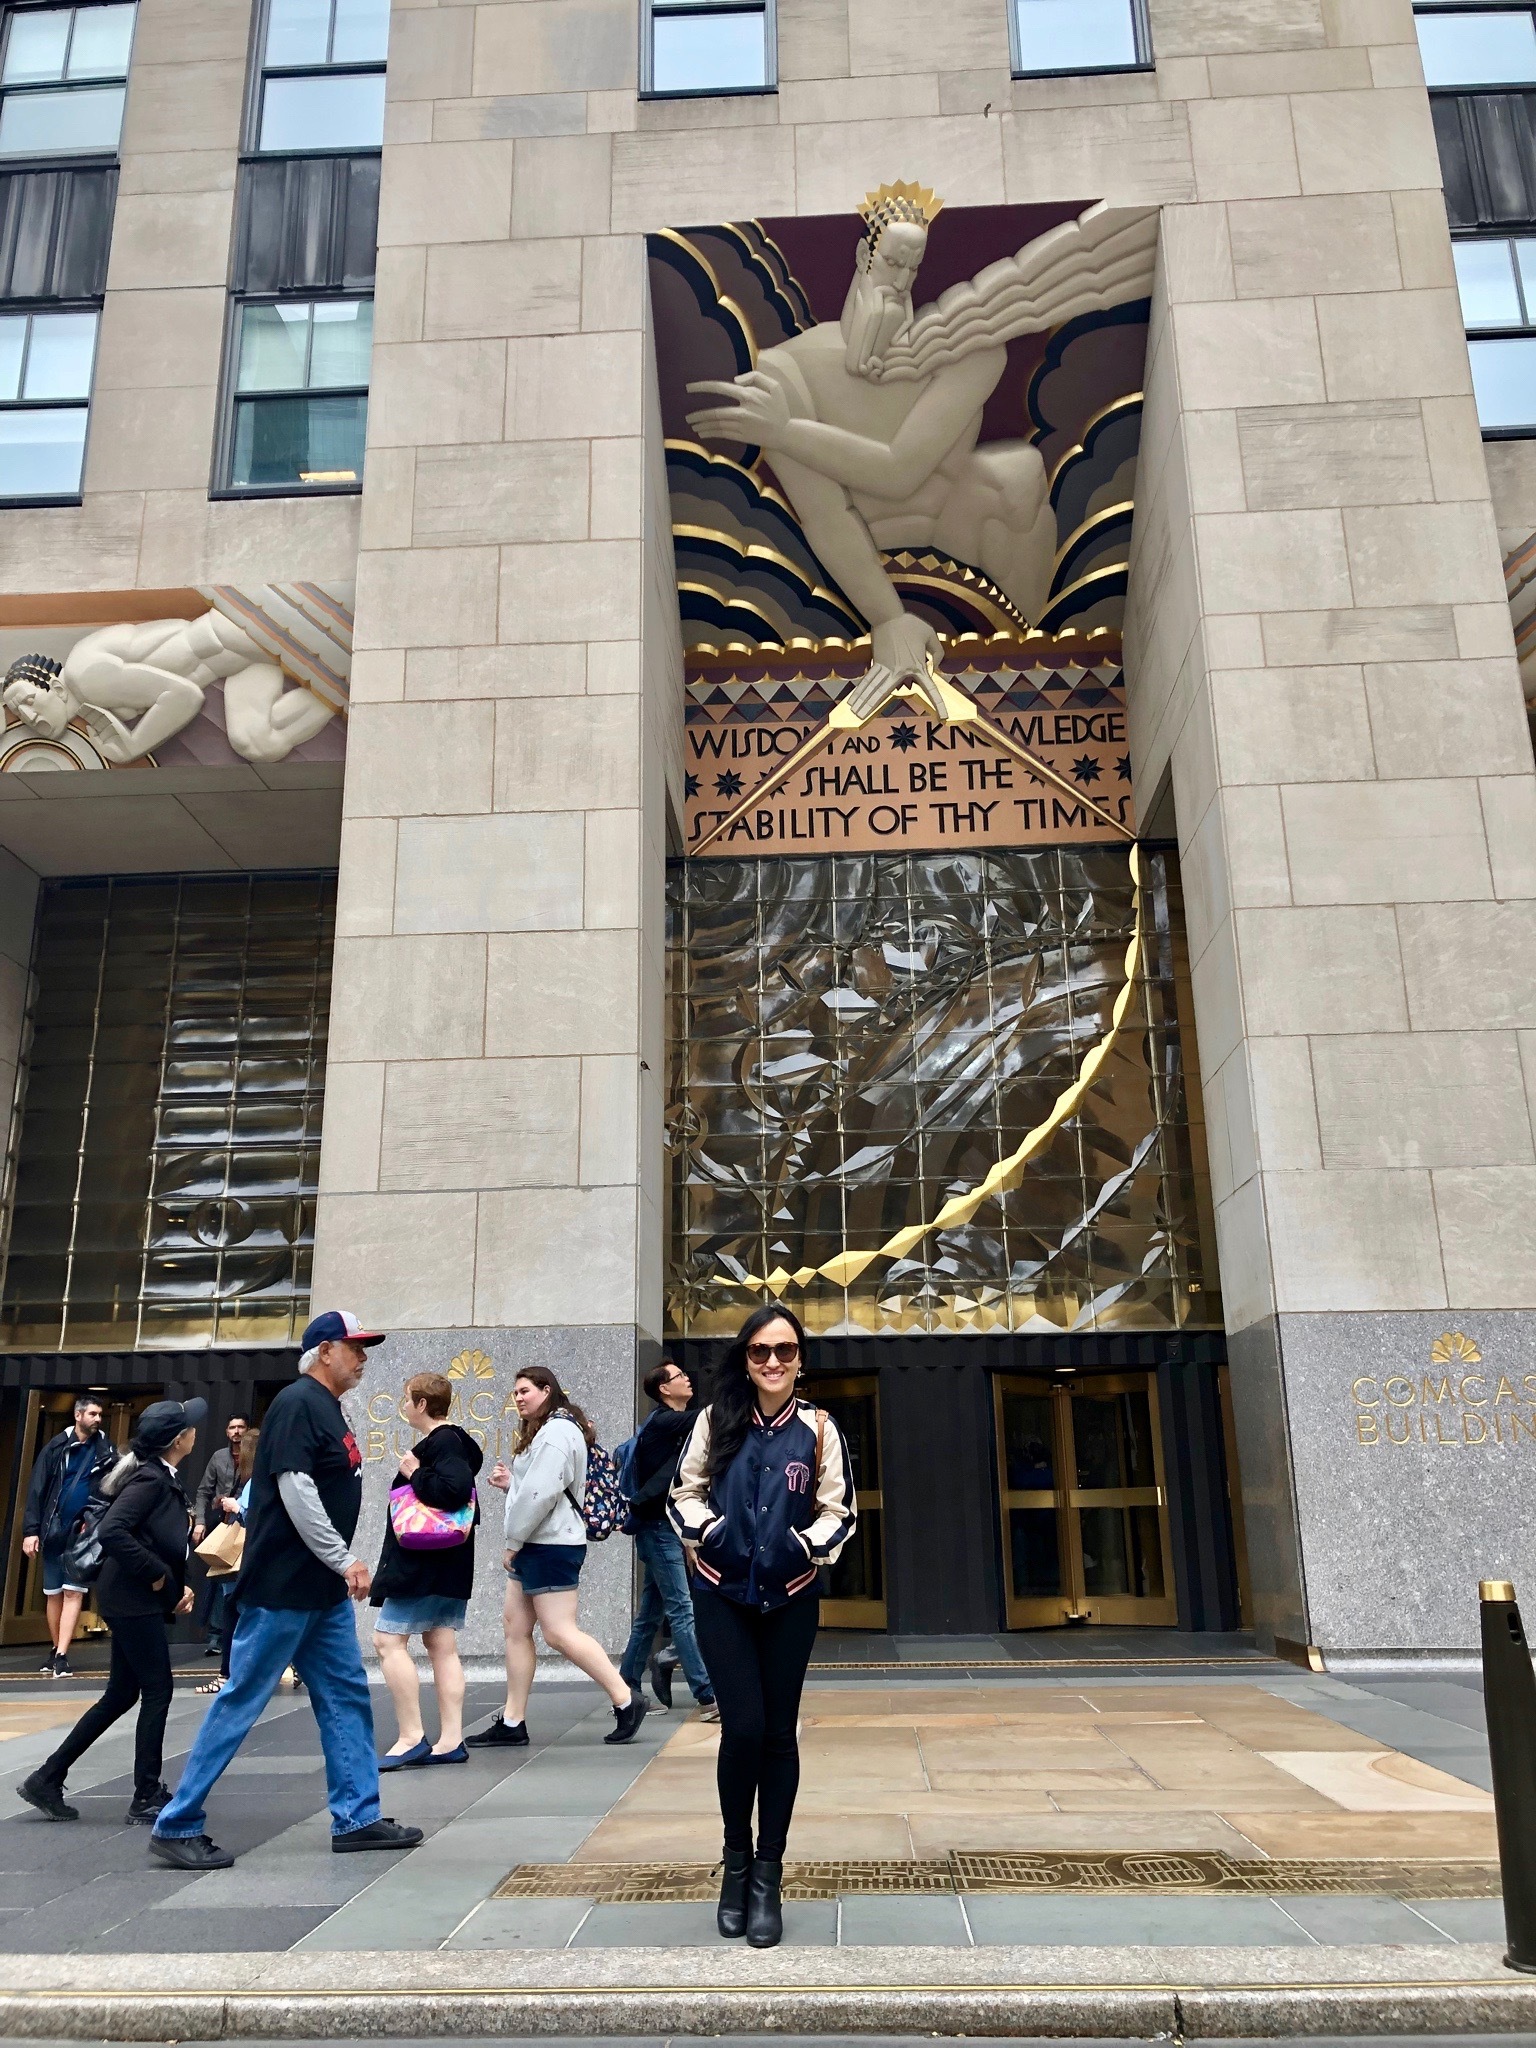 Rockefeller Center New York